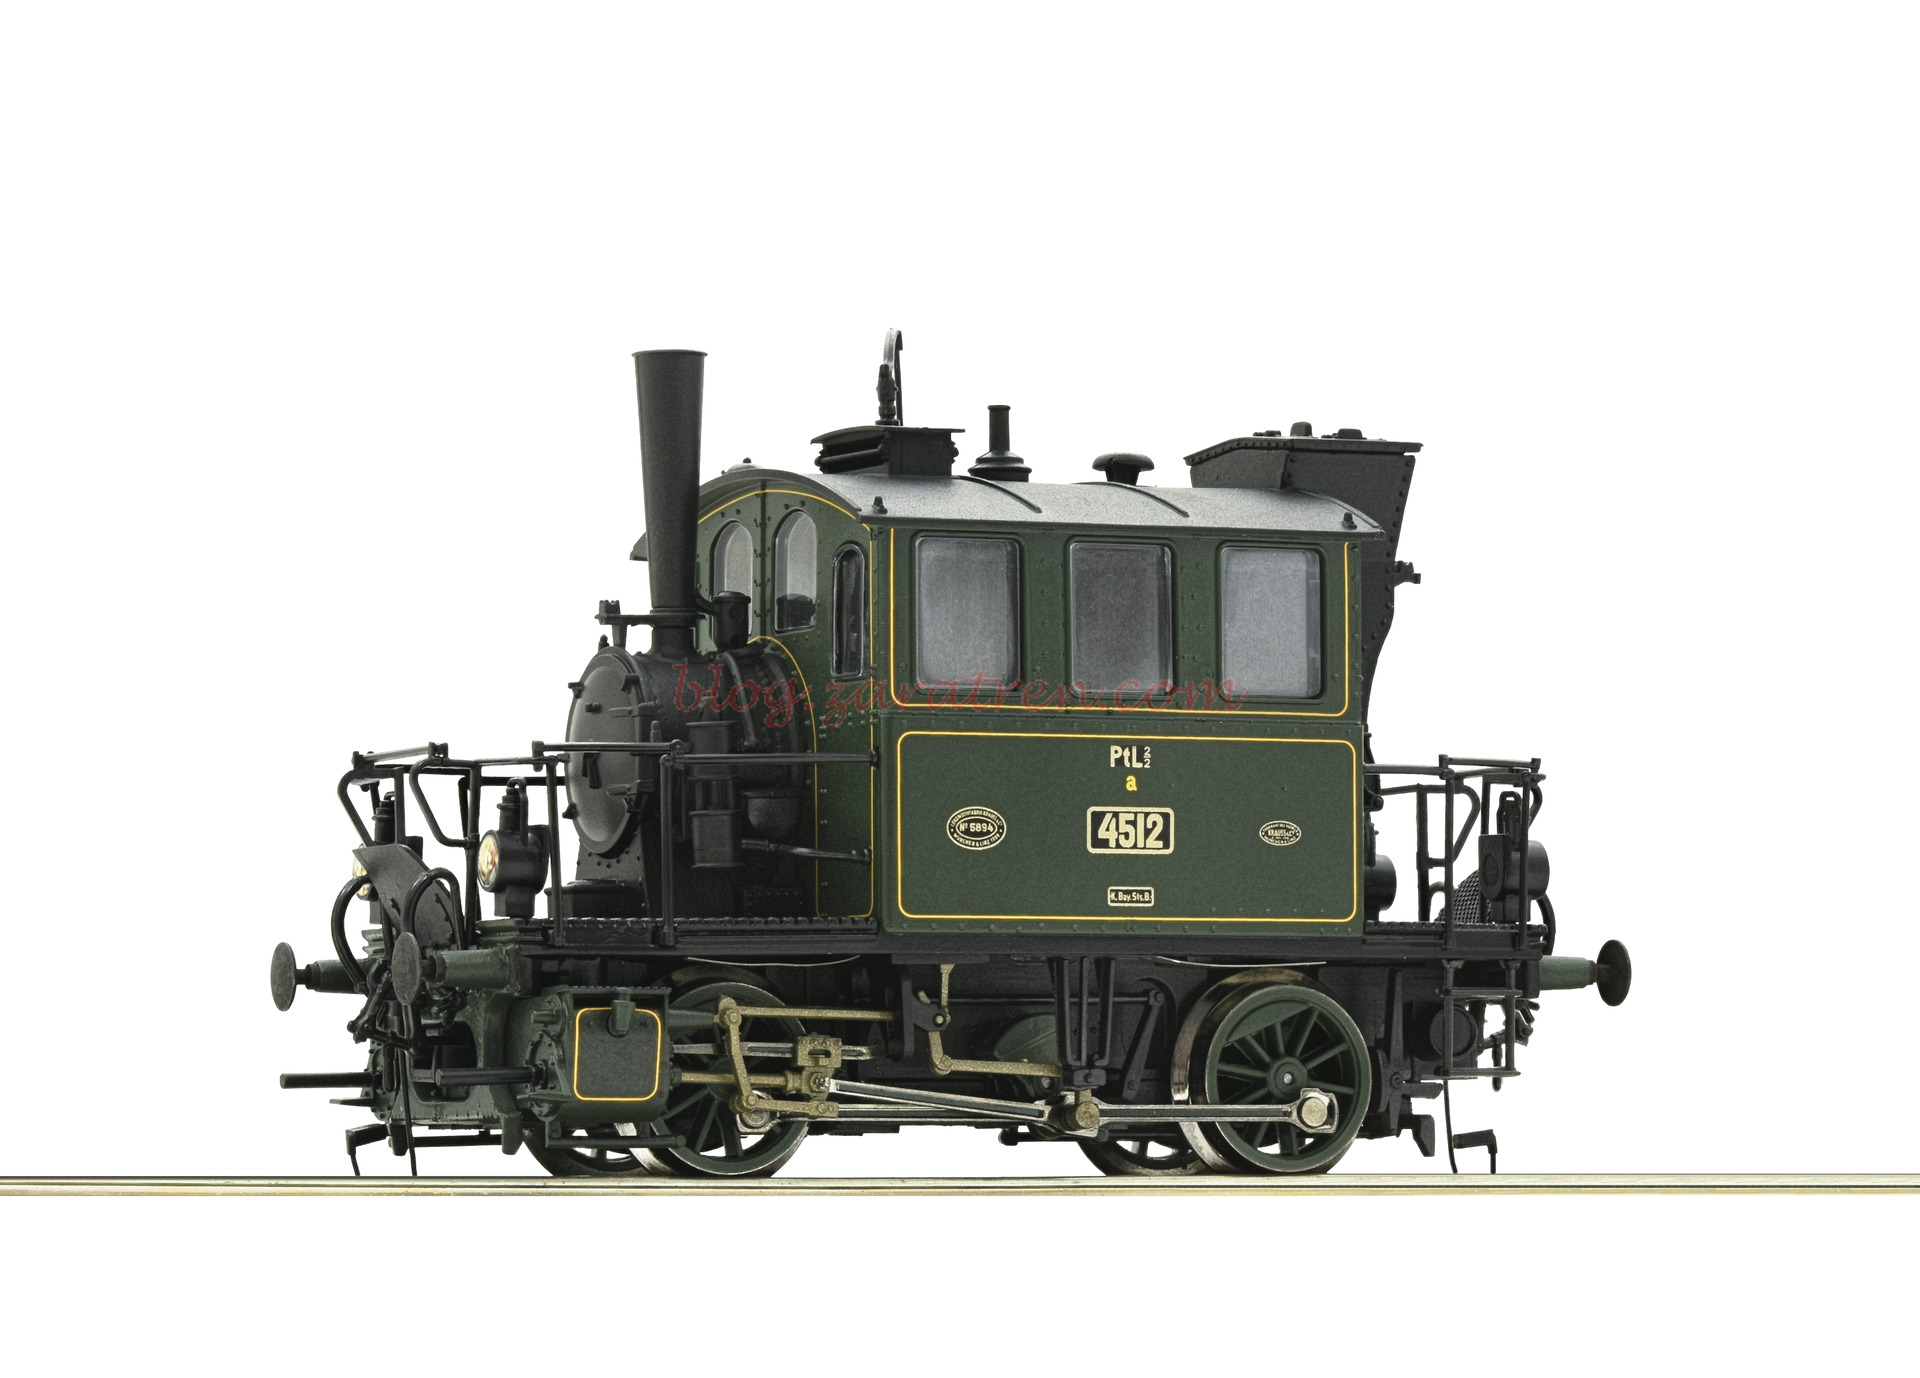 Roco – Locomotora de Vapor Tipo PtL 2/2, K.Bay.Sts.B, Analogica, Escala H0. Ref: 72058.